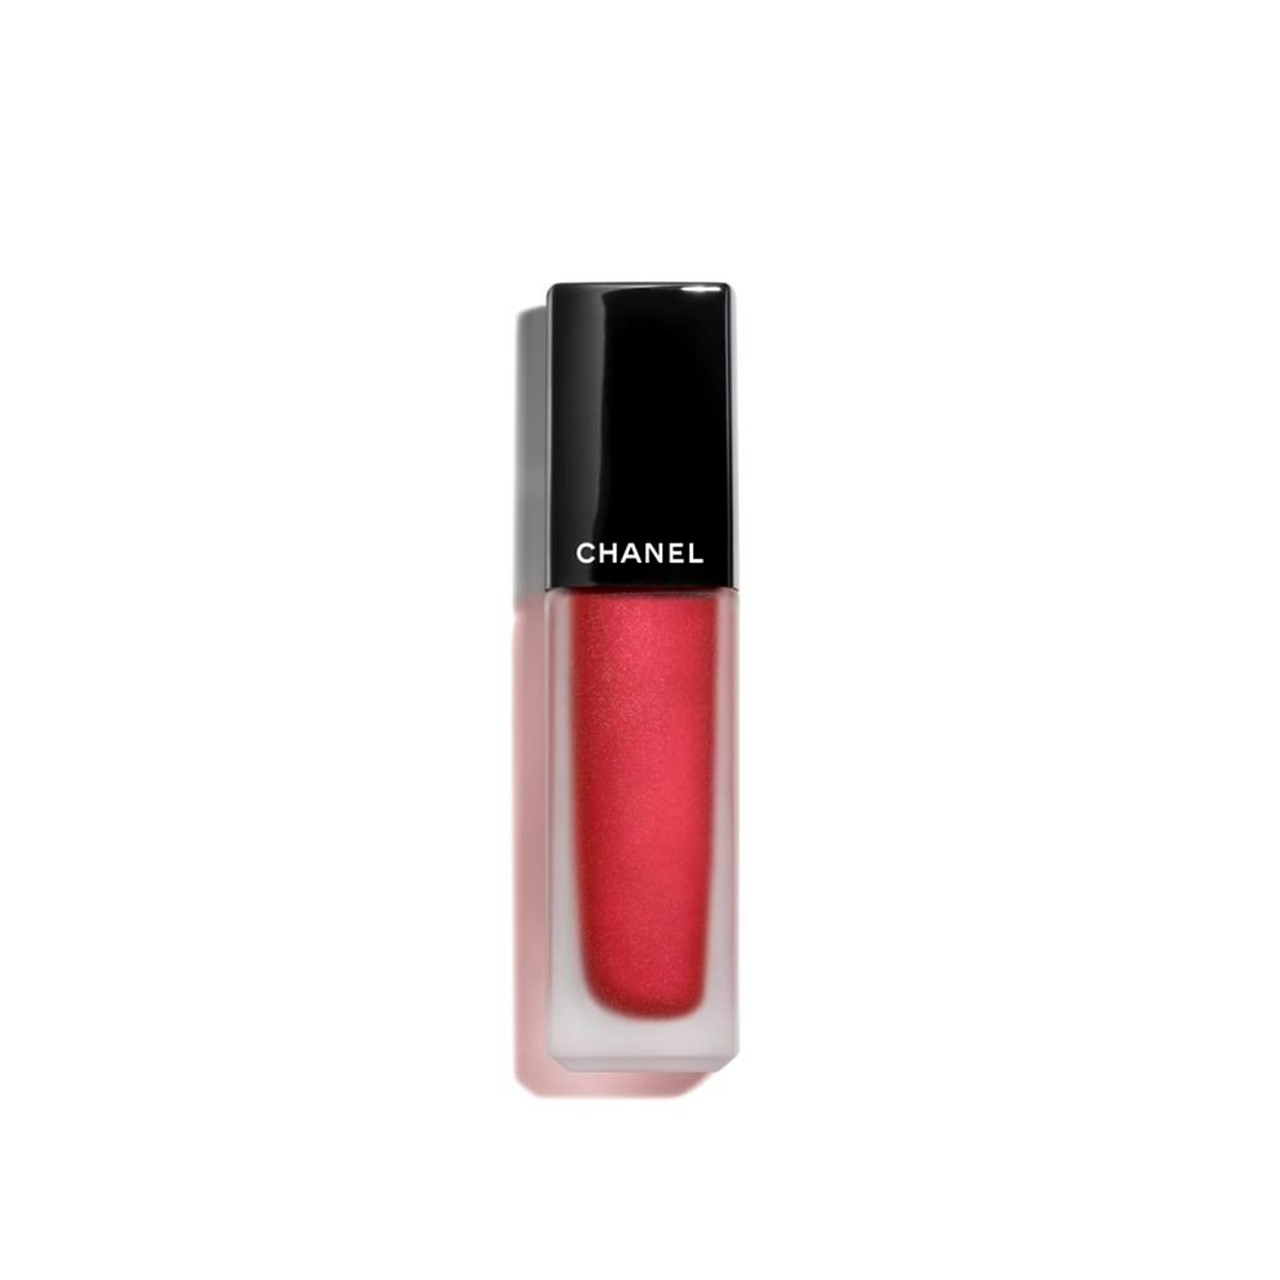 CHANEL Rouge Allure Ink Matte Liquid Lip Colour 208 6ml